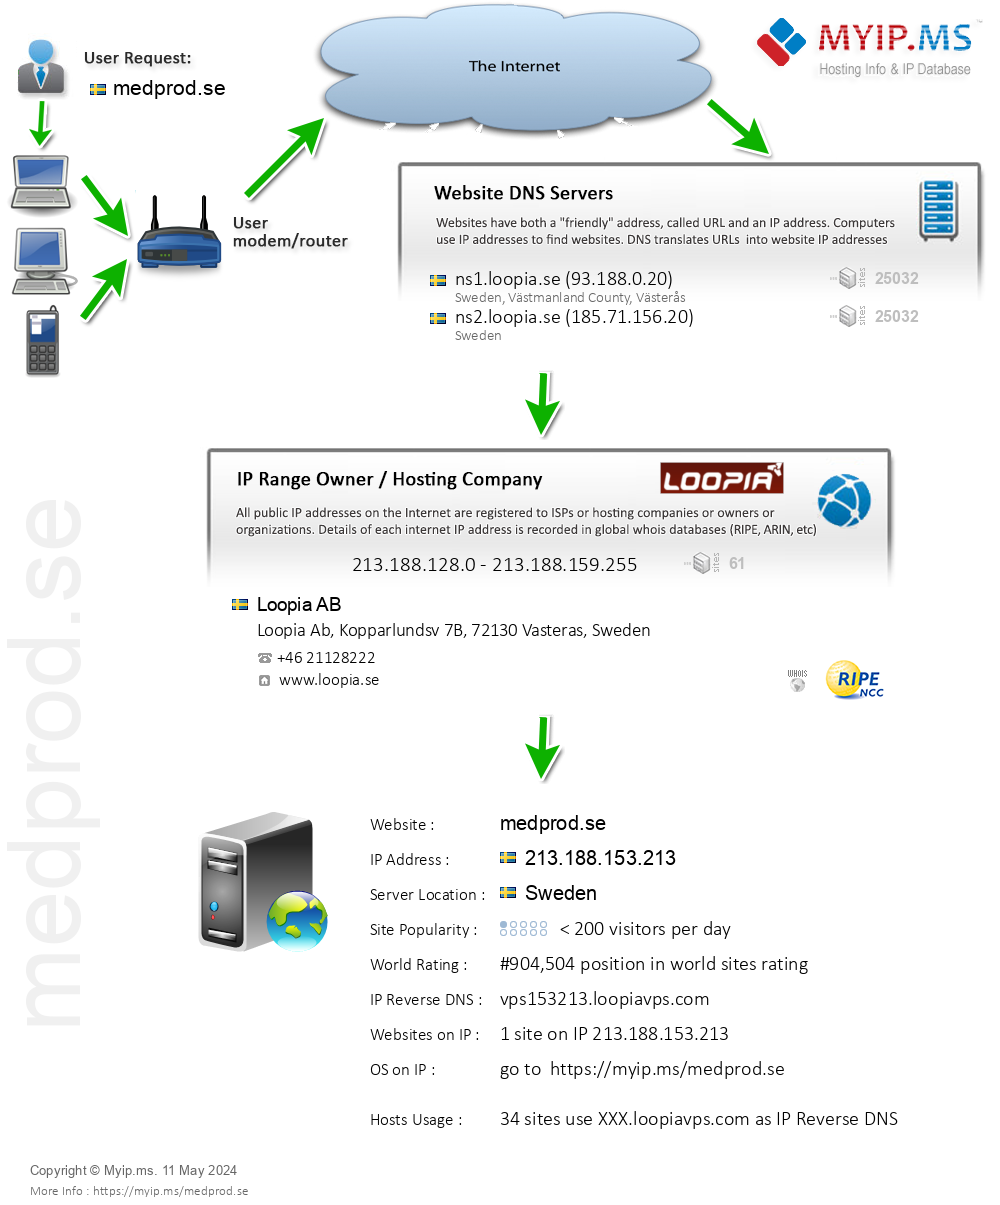 Medprod.se - Website Hosting Visual IP Diagram